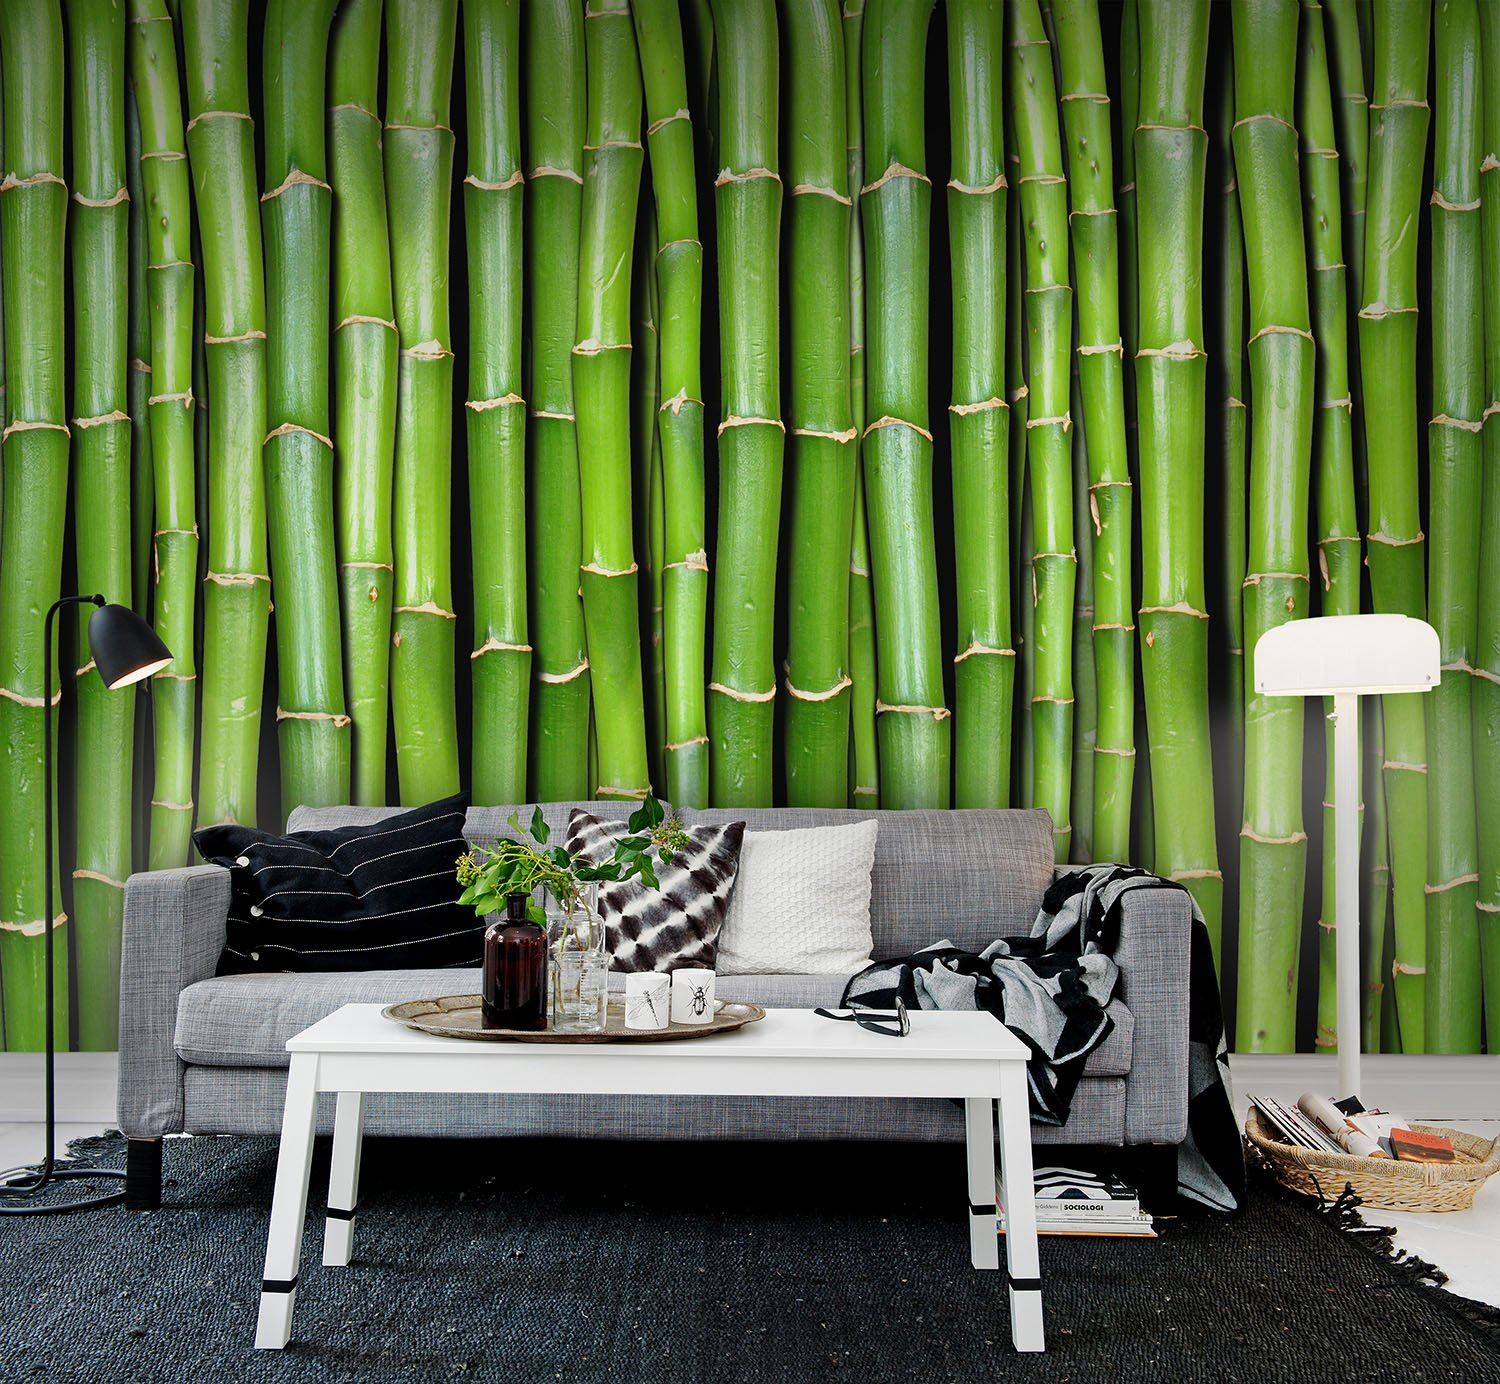 Бамбуковые стены купить. Зеленый бамбук в интерьере. Искусственный бамбук в интерьере. Обои виниловые бамбук. Бамбук на стене в интерьере.